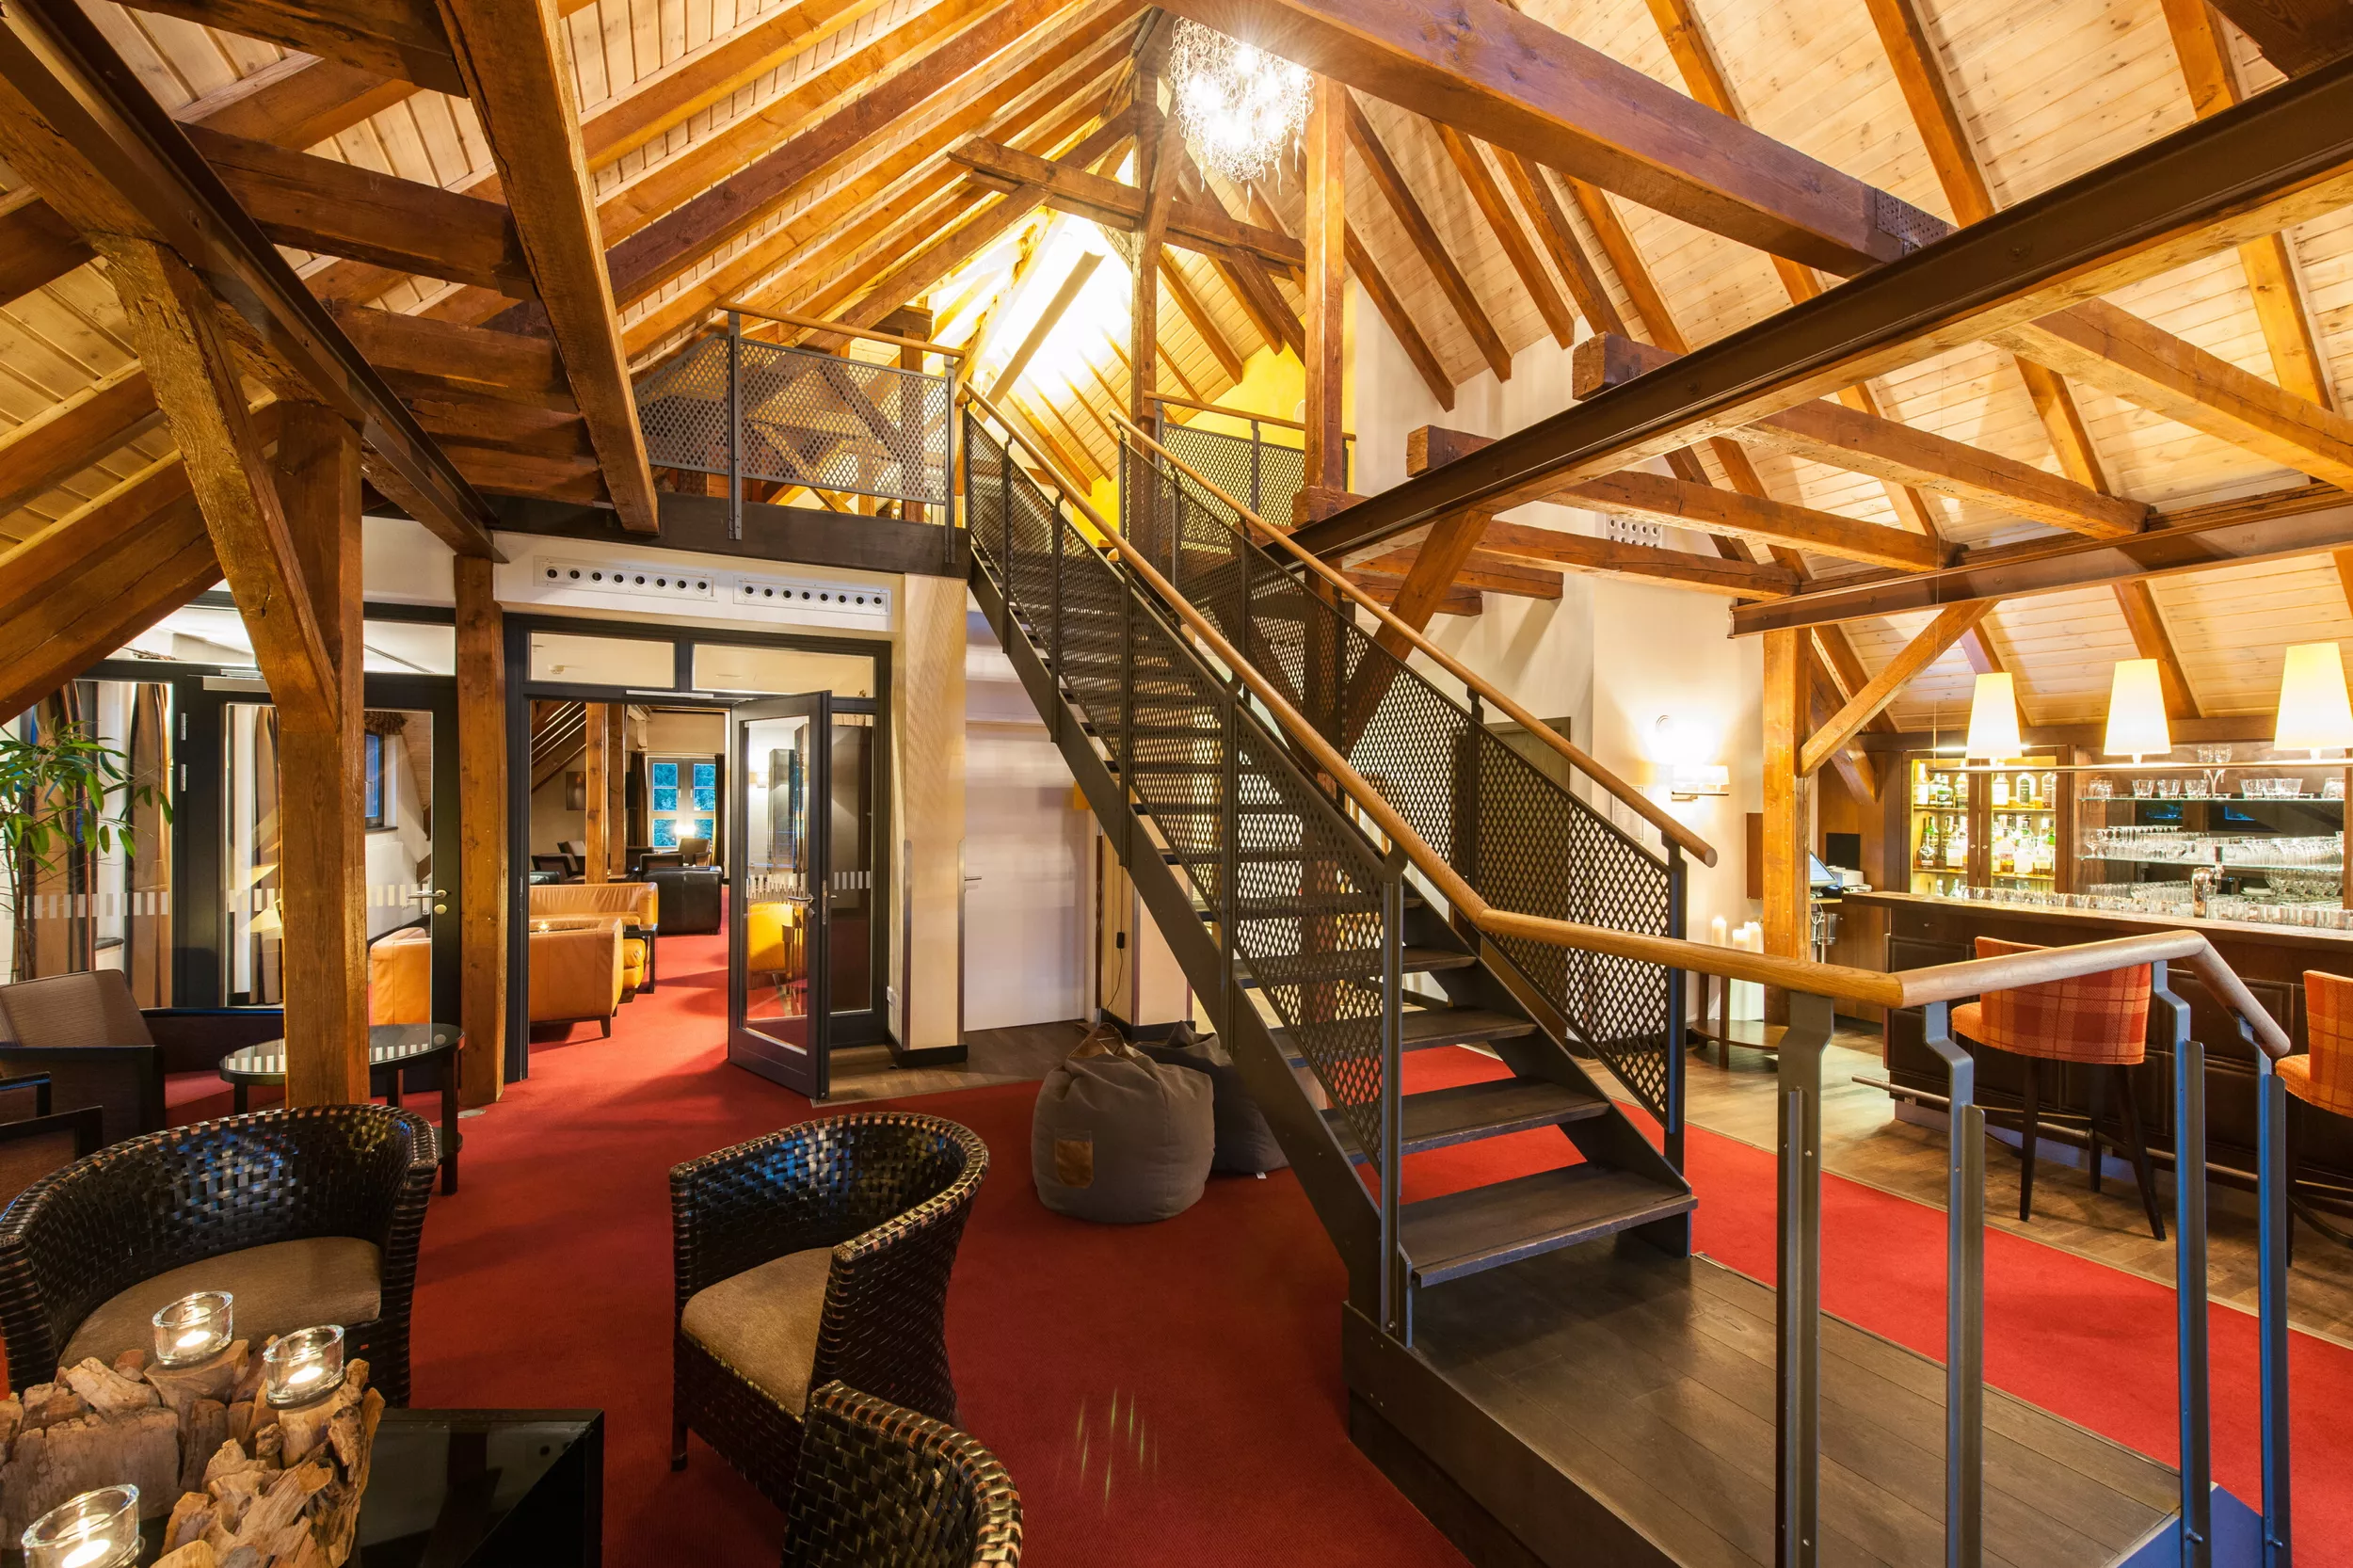 Lounge gemütlich mit offenem Dachstuhl, Bar, Sitzgruppen und Treppe in ein höhergelegenes Séparée.